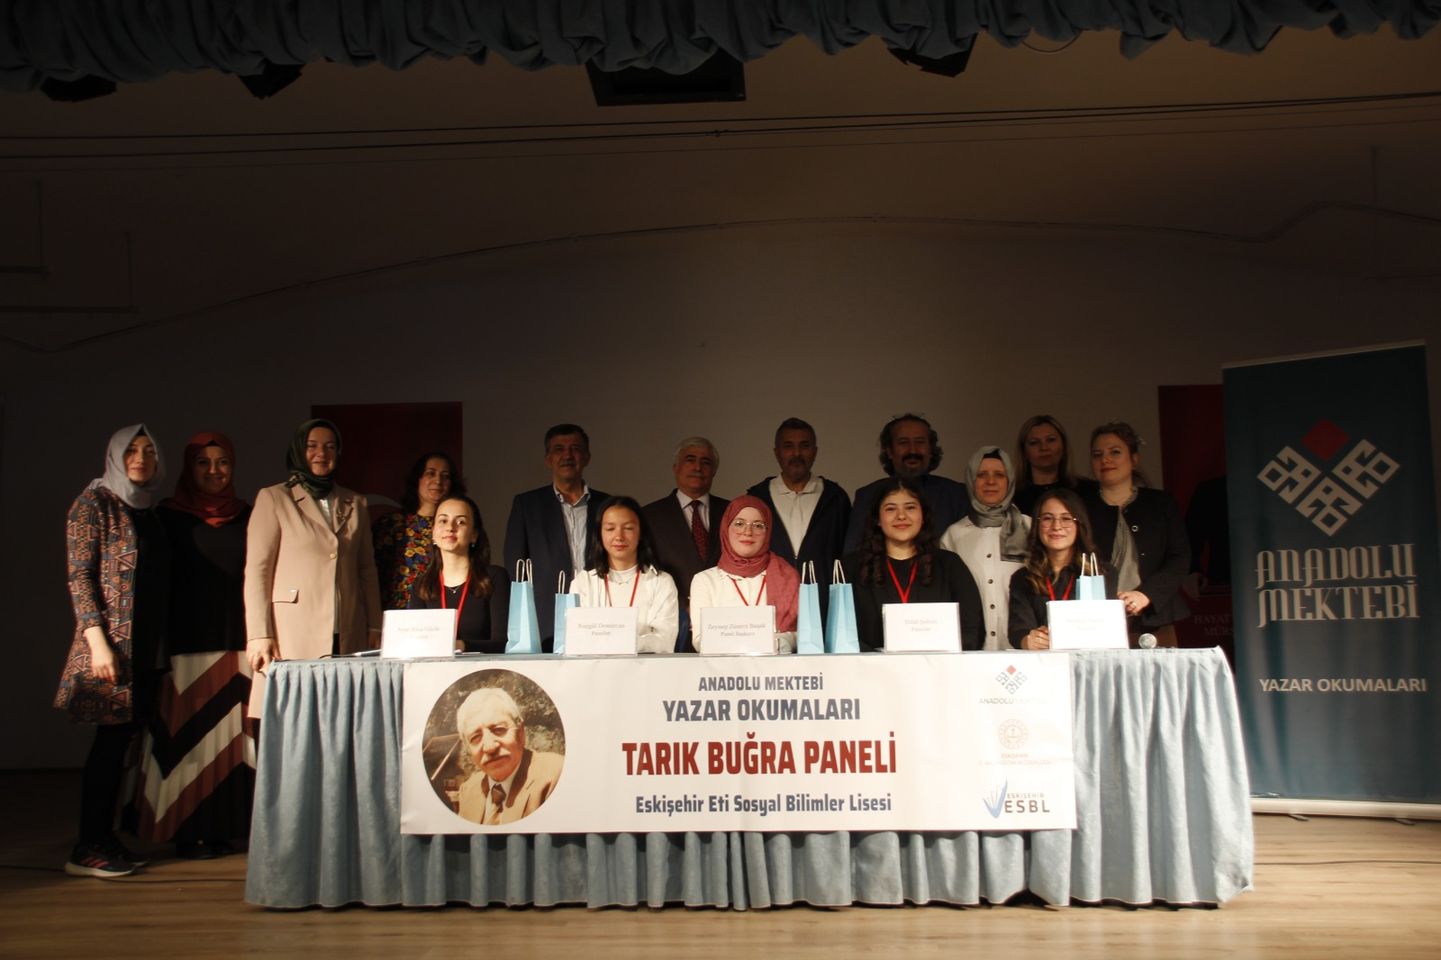 Eskişehir'deki Anadolu Mektebi Yazar Okumaları Projesi'nde gerçekleşen il paneline yoğun öğrenci ilgisi